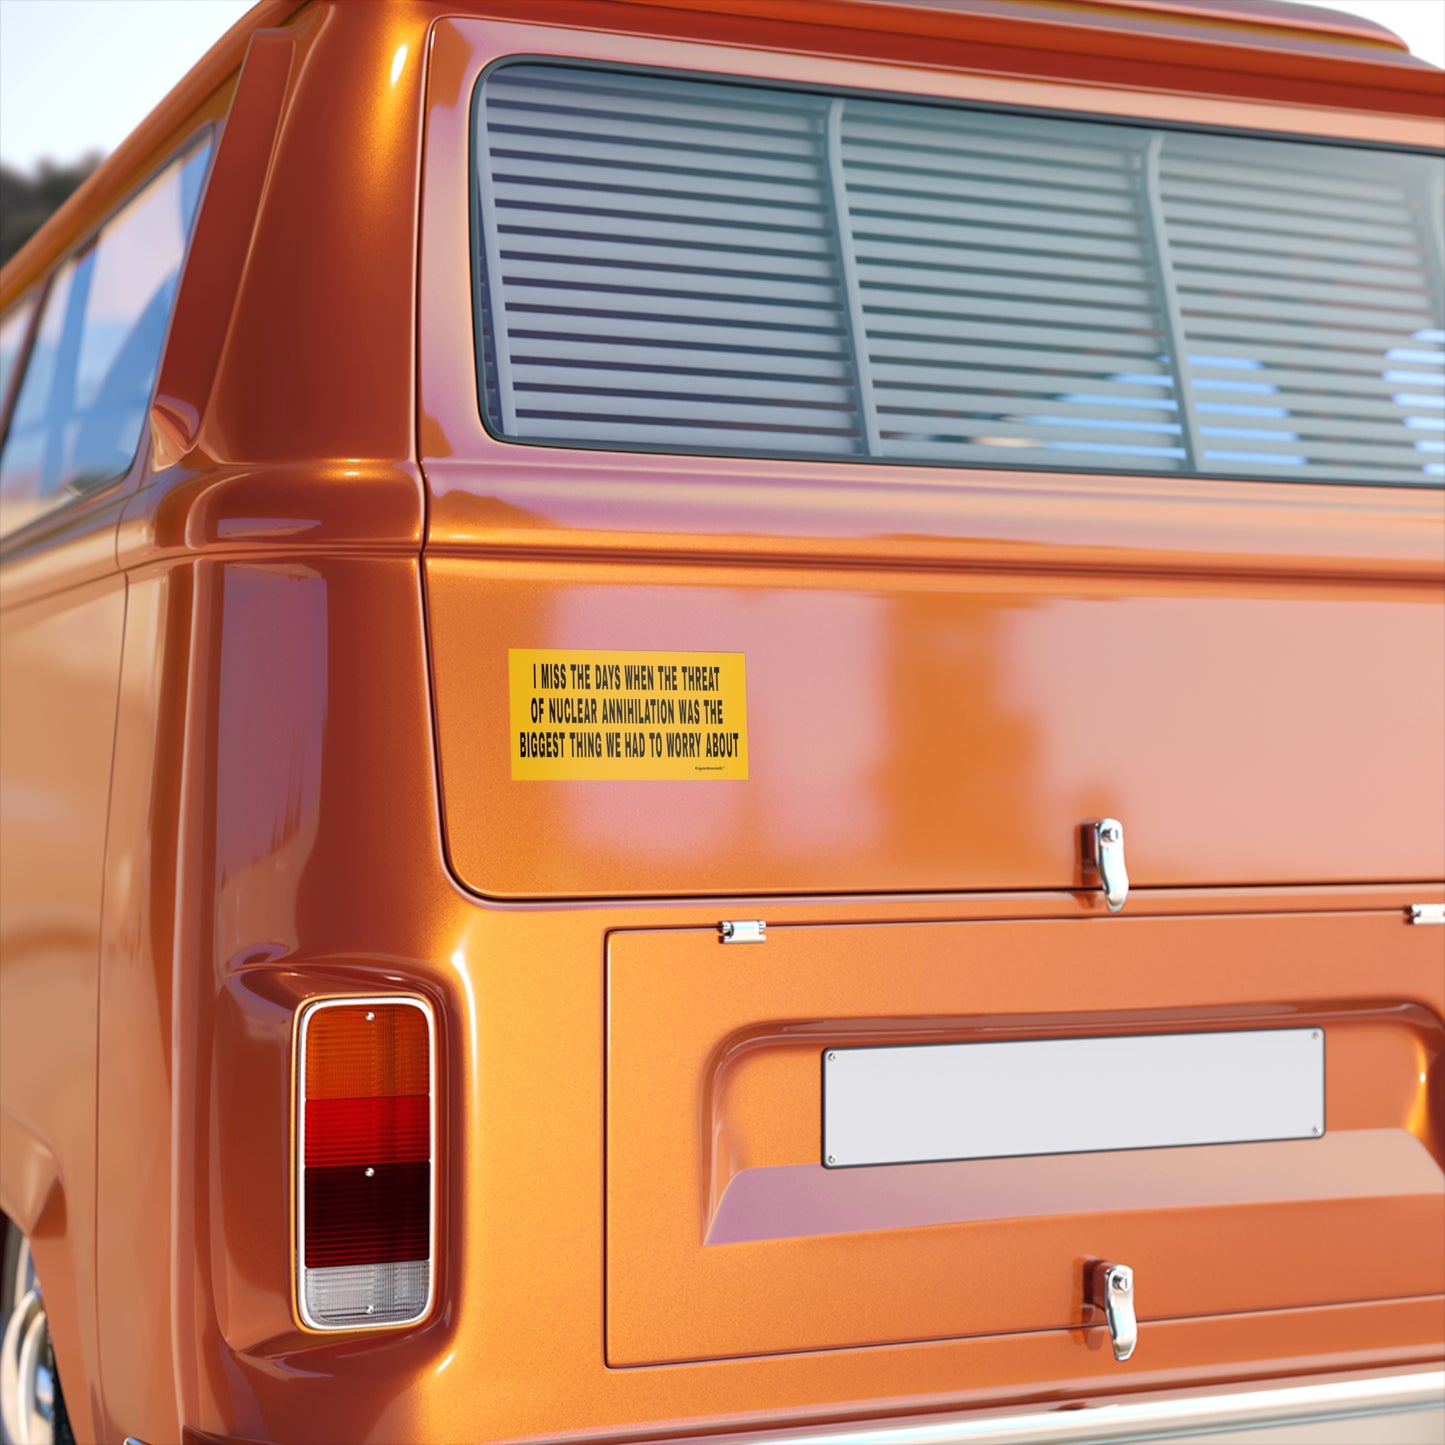 nuclear annihilation bumper sticker displayed on back of camper van